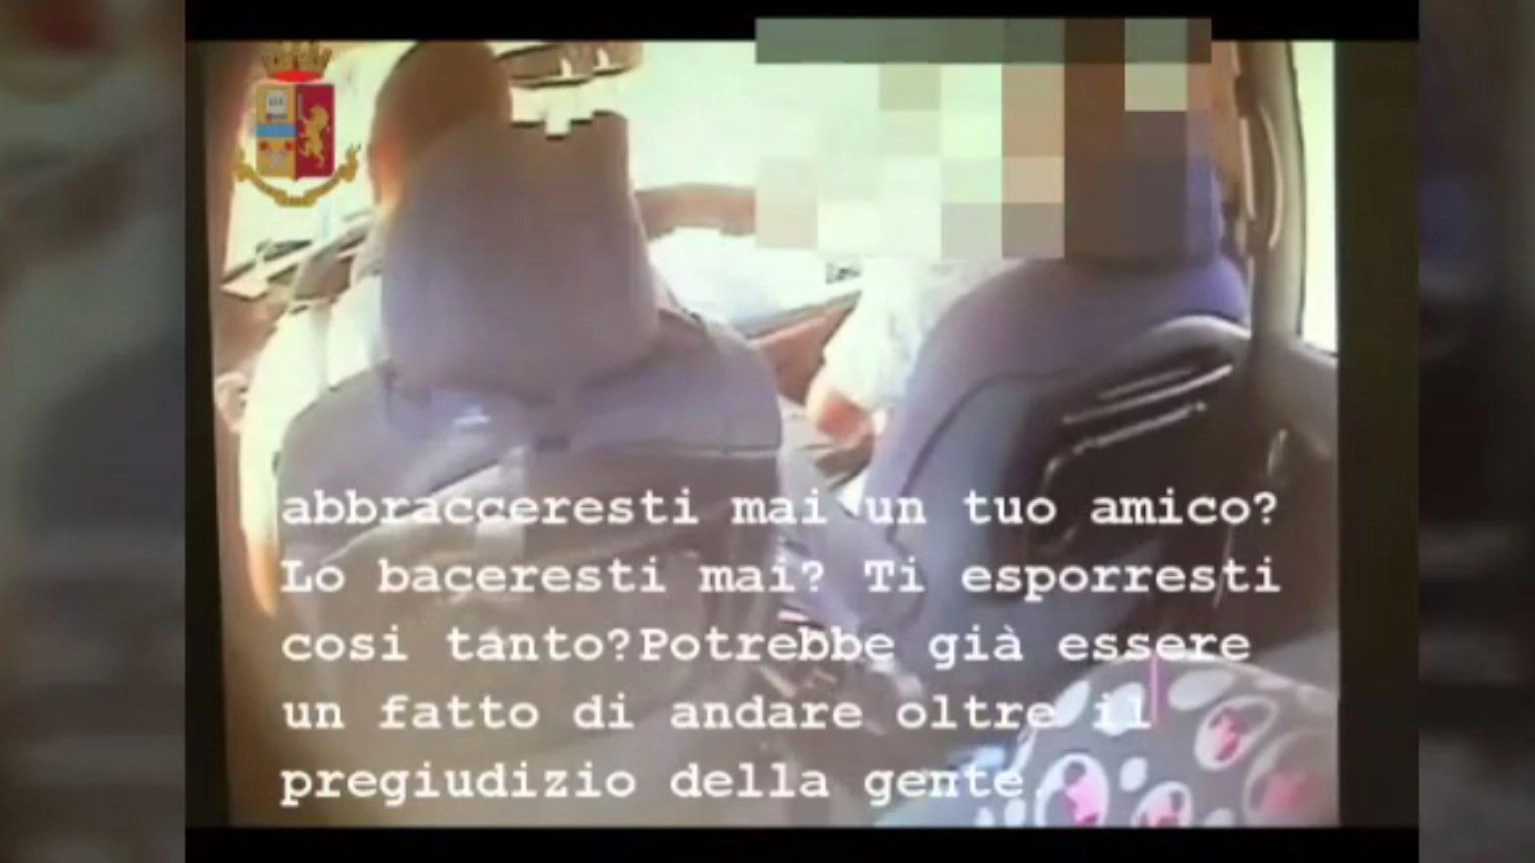 Un fermo immagine del video girato con telecamera segreta dalla polizia